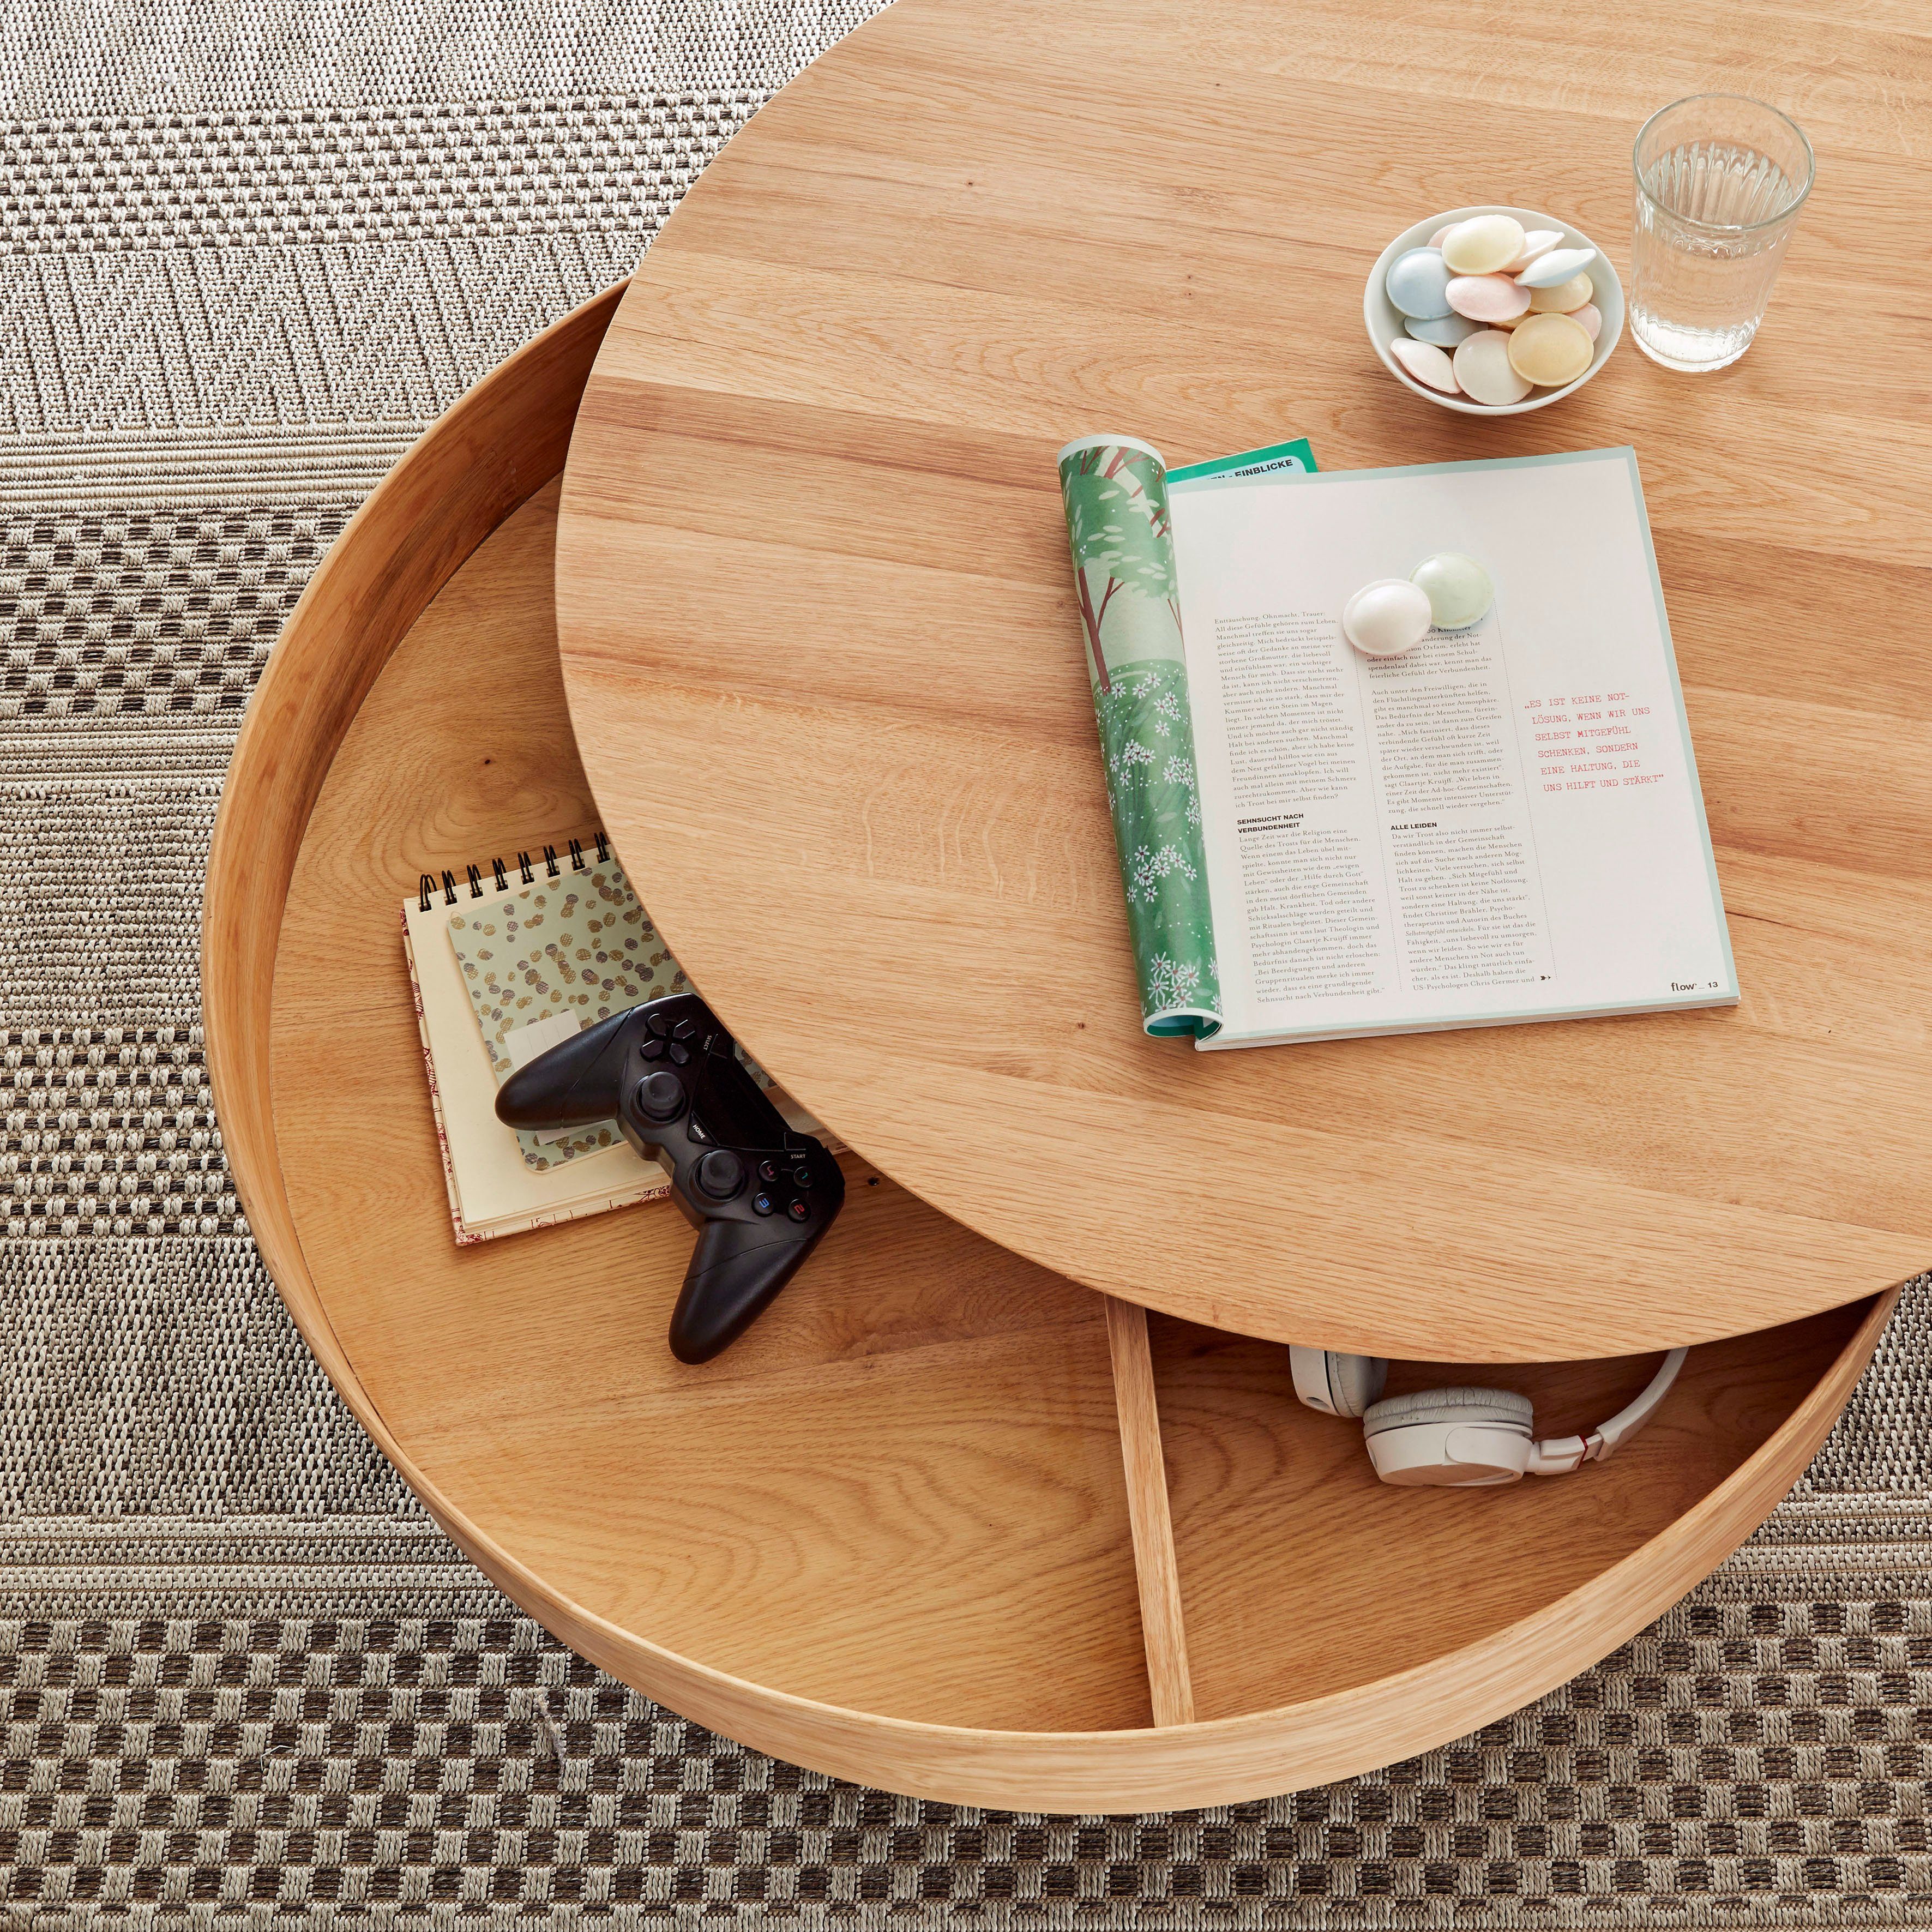 MCA furniture Couchtisch Suva, Tischplatte | drehbar furniert Innenfach Asteiche Asteiche mit